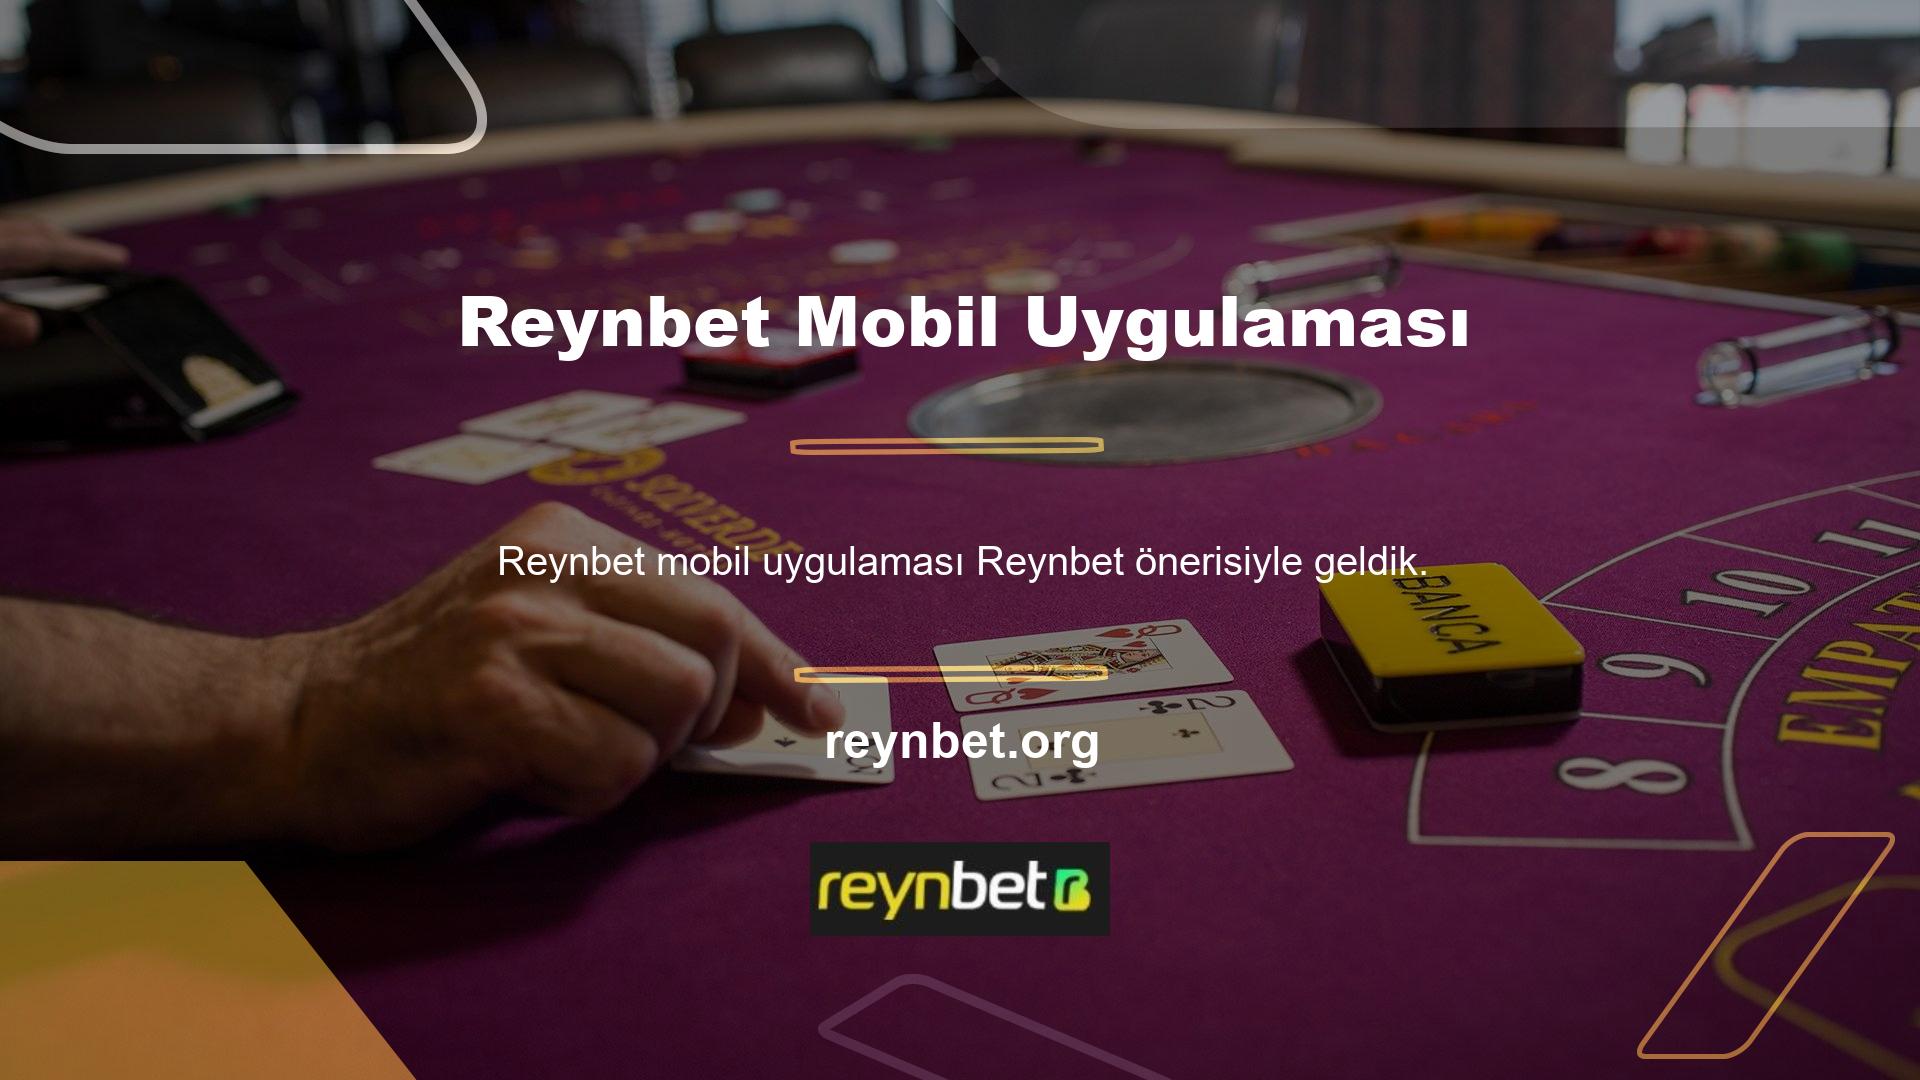 Ayrıca Reynbet mobil uygulamasını bulabilir ve bu uygulamayı telefonunuza veya tabletinize ücretsiz olarak indirebilirsiniz